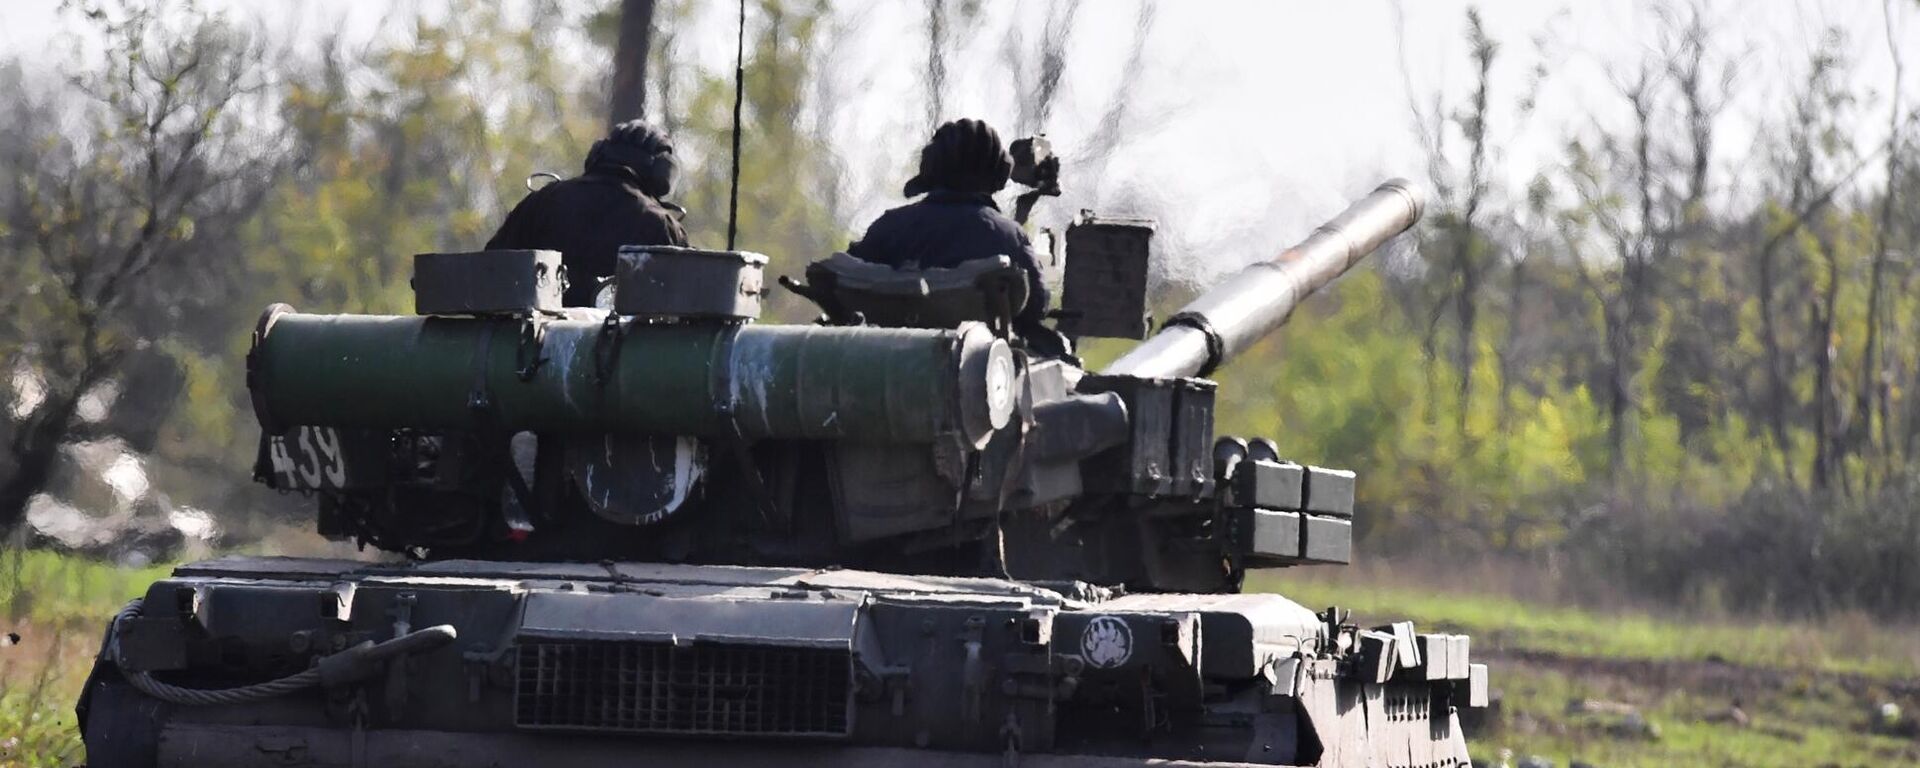 يتم إرسال دبابة تي-80 لإطلاق النار الحي في مواقع القوات المسلحة لأوكرانيا في منطقة دونيتسك - سبوتنيك عربي, 1920, 06.10.2022